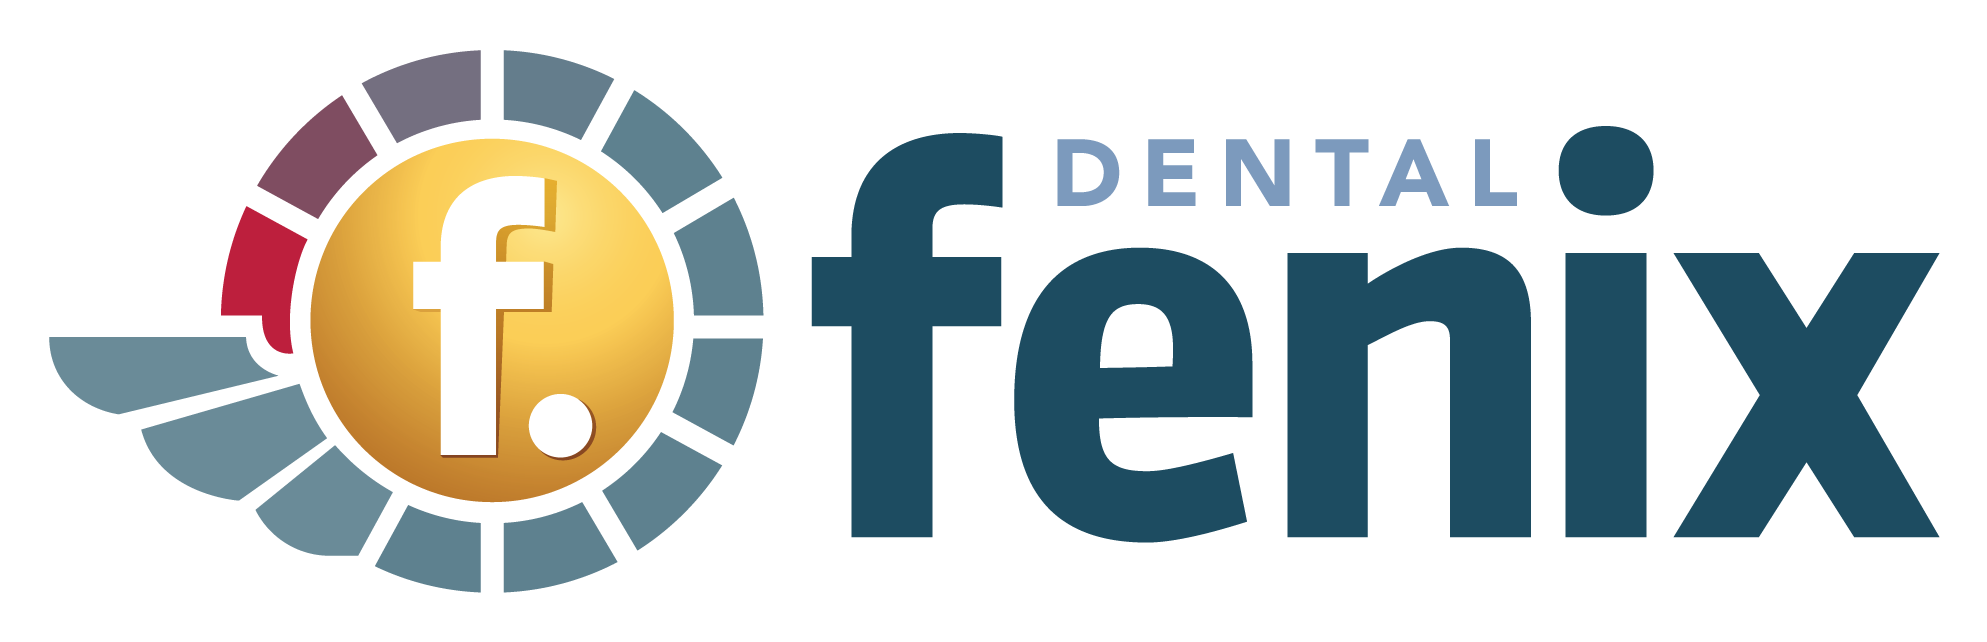 dental fenix 2 - Onde Encontrar